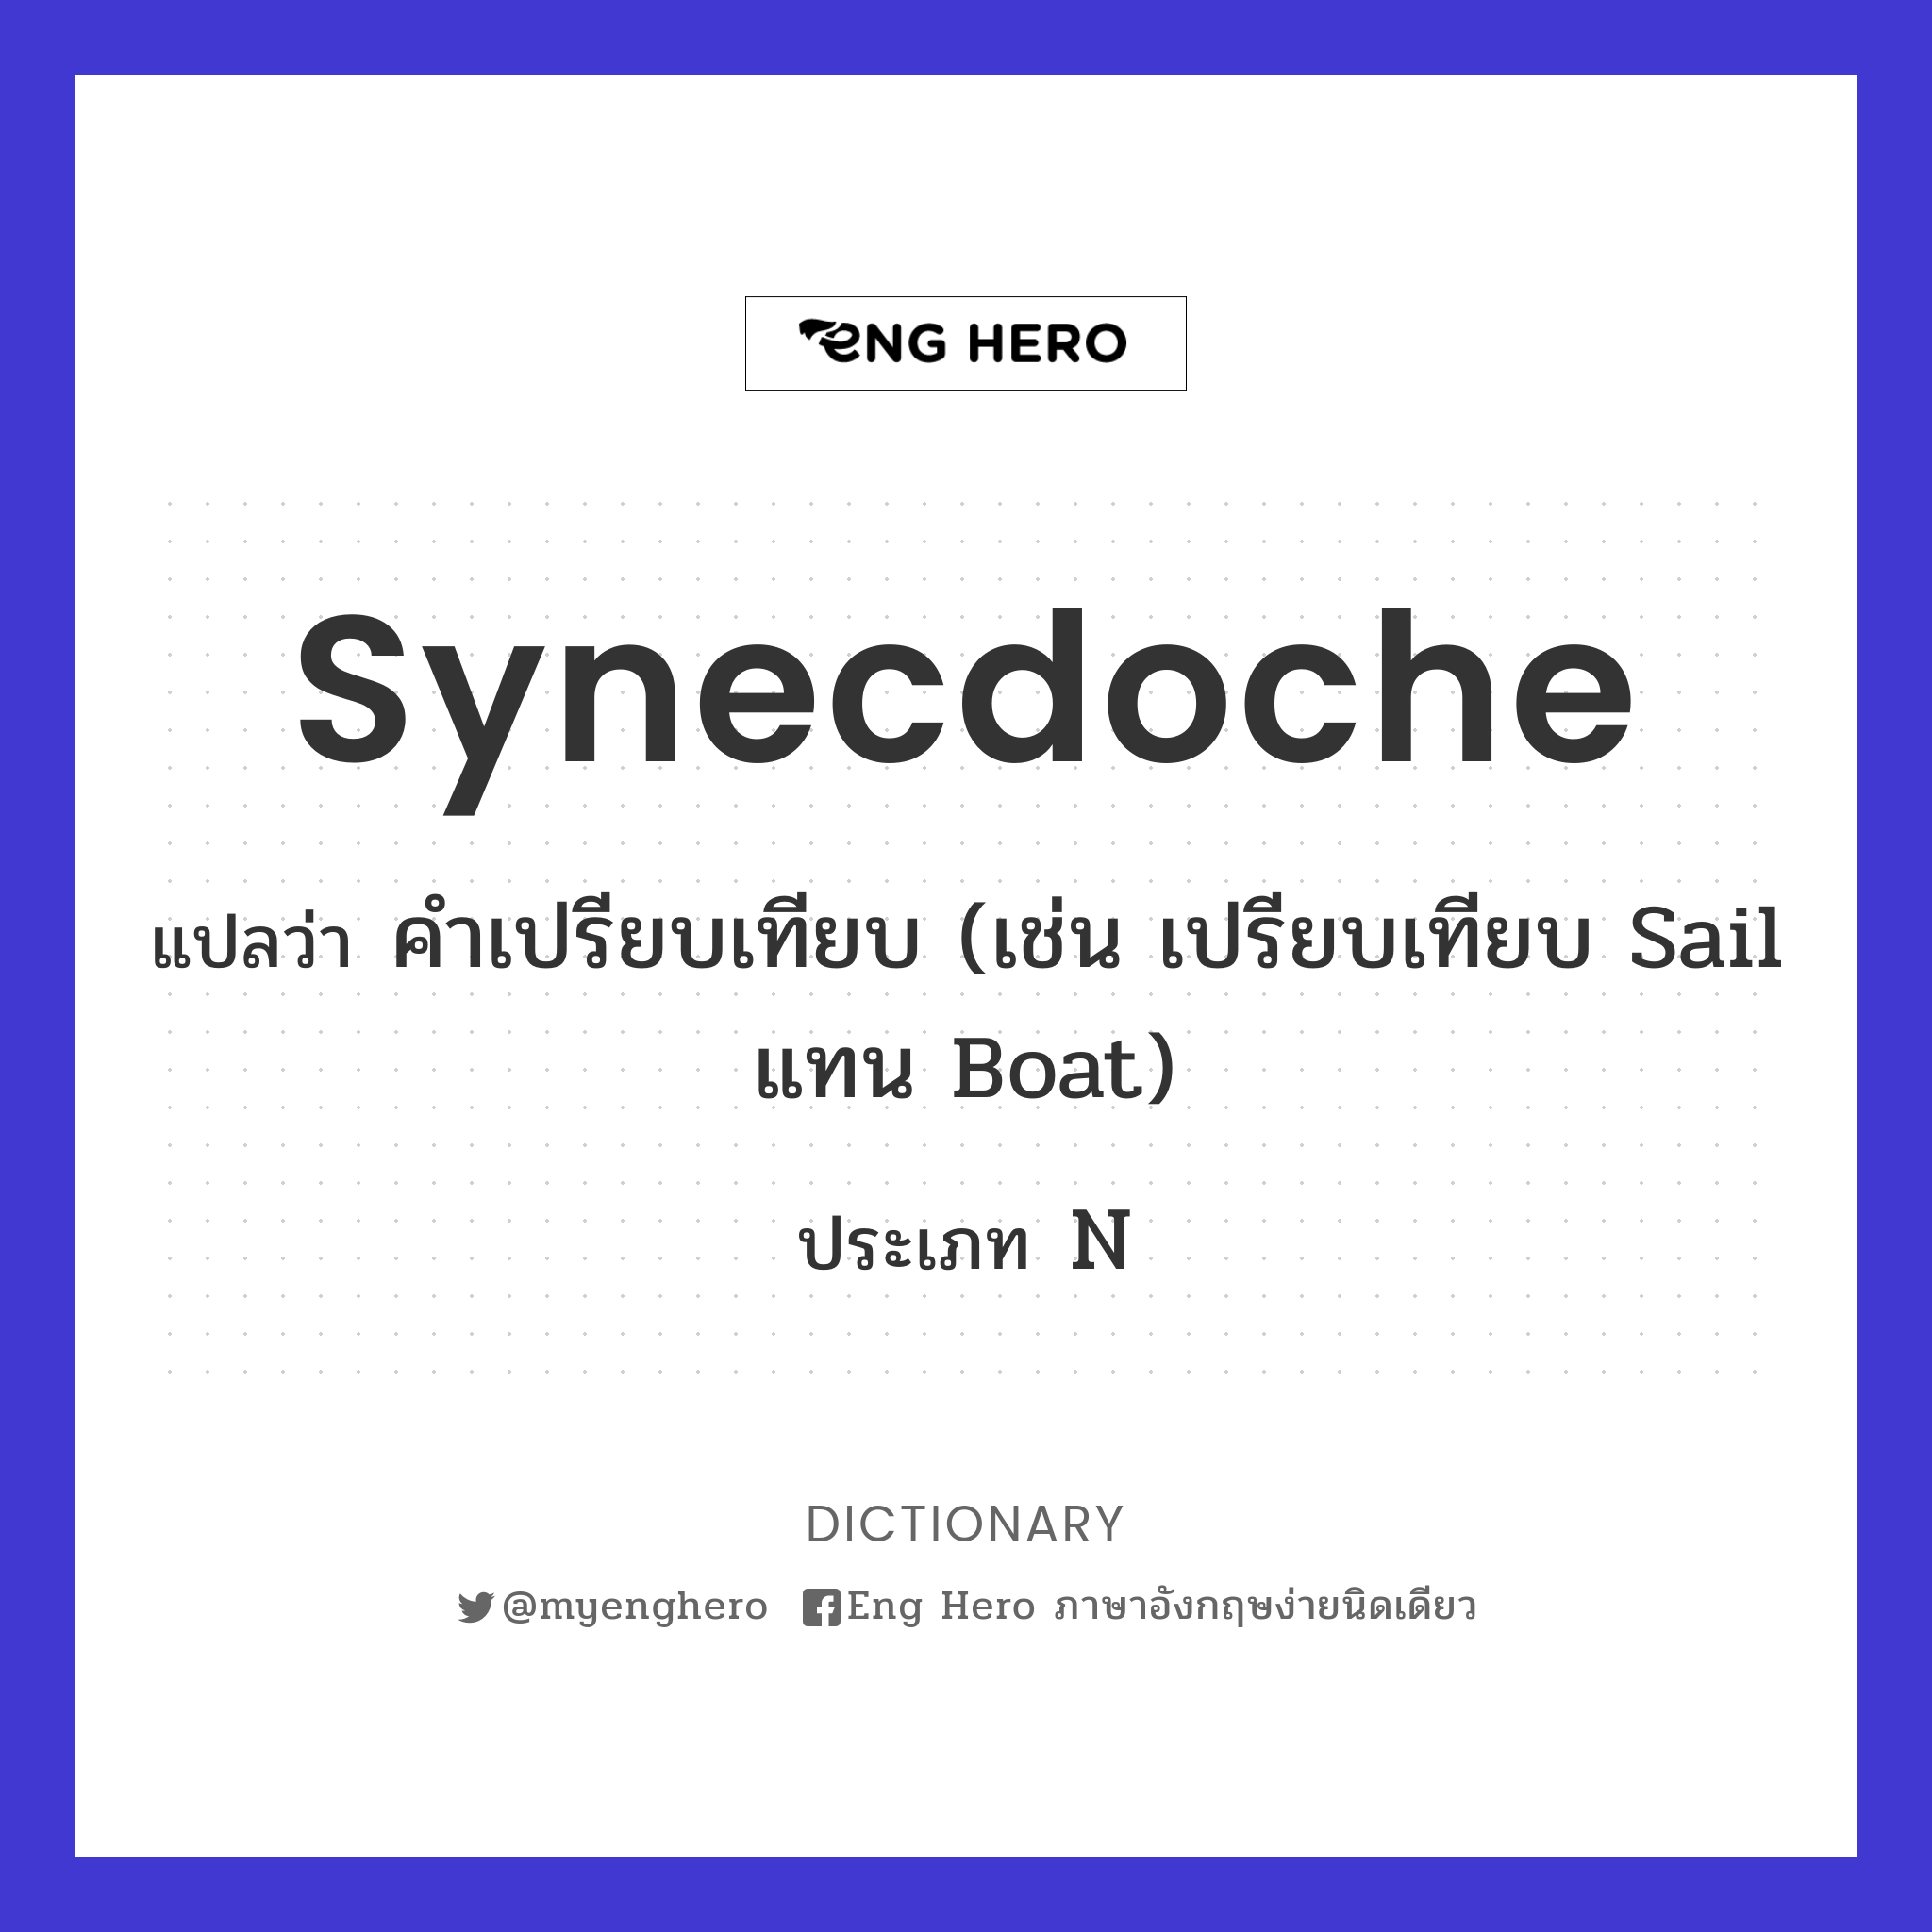 synecdoche